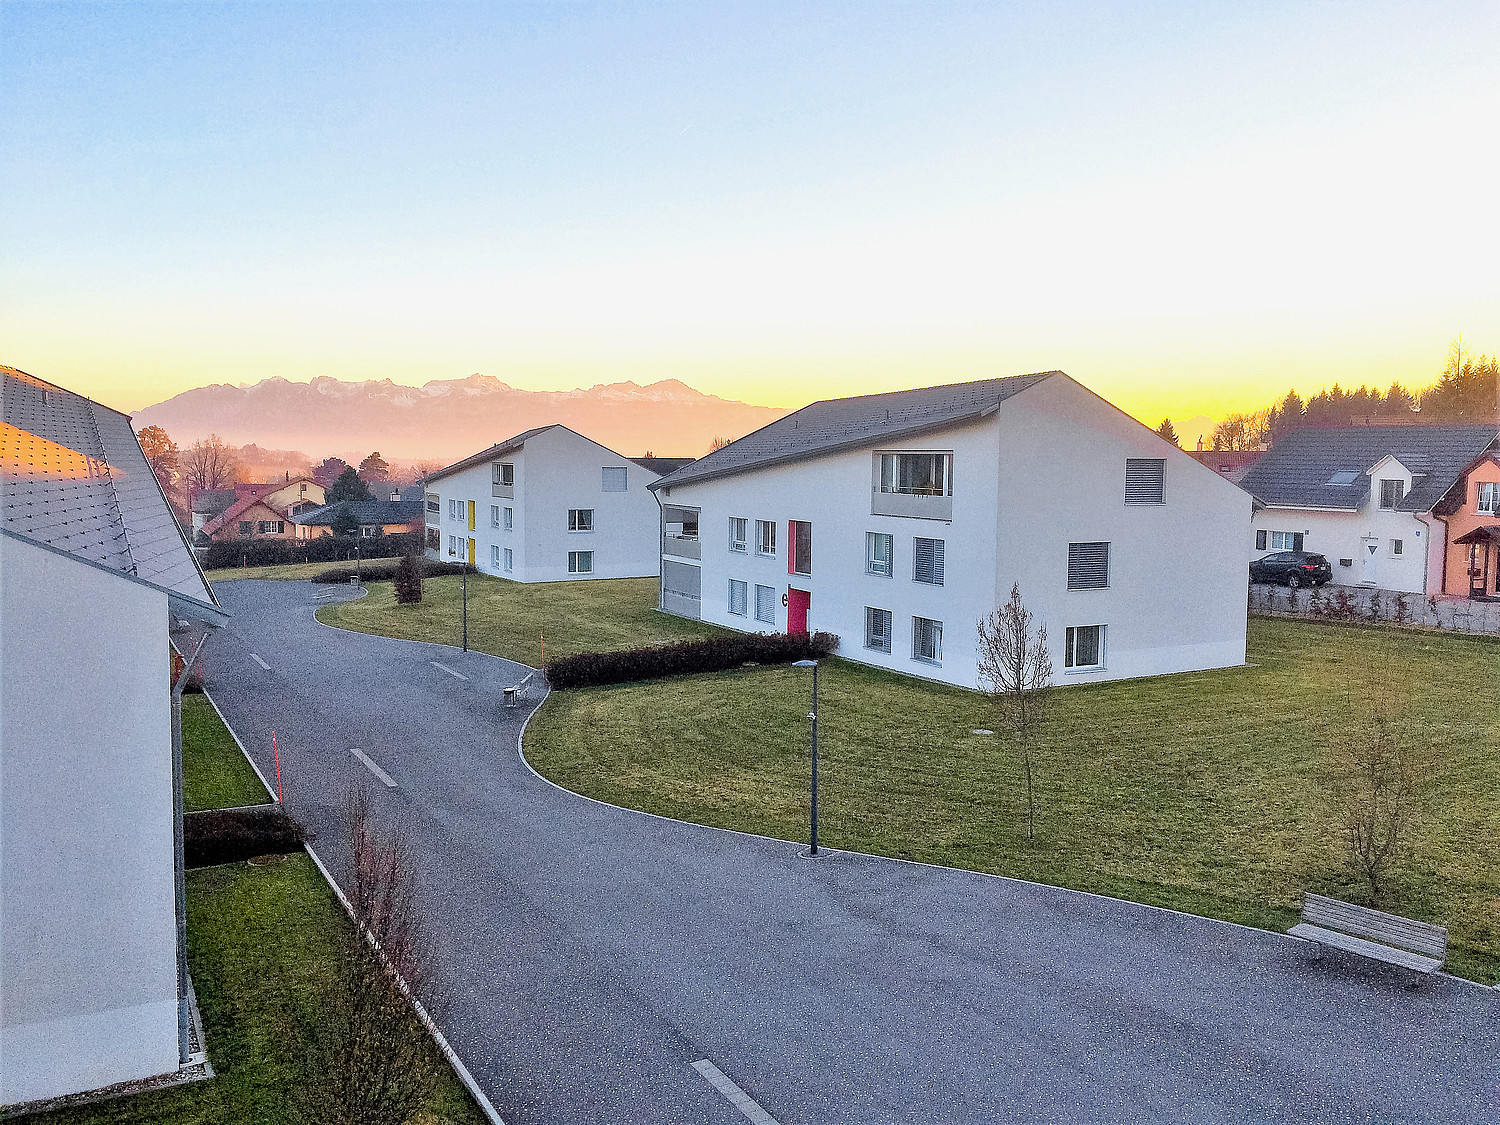 Le site de Pra Roman à Vers-chez-les-Blanc geré par la fondation NetAge offre une soixantaine de logements destinés aux plus de 55 ans, en solo ou en couple. 